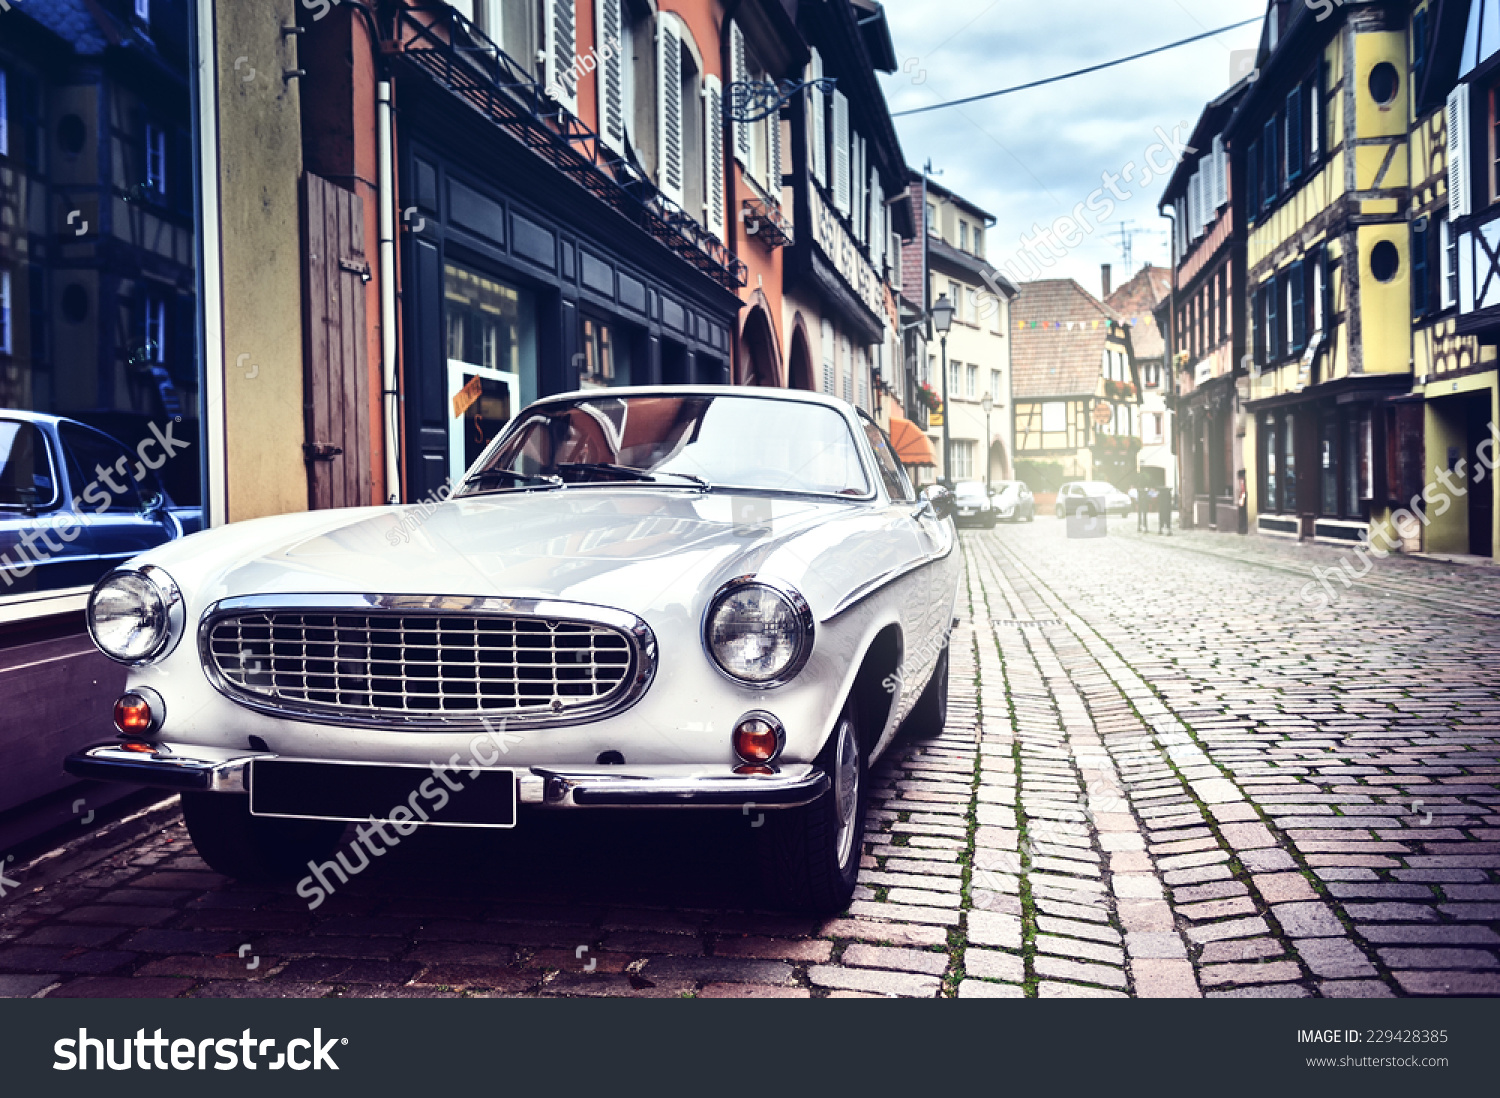 レトロな車がヨーロッパの古い街並みに停められている の写真素材 今すぐ編集